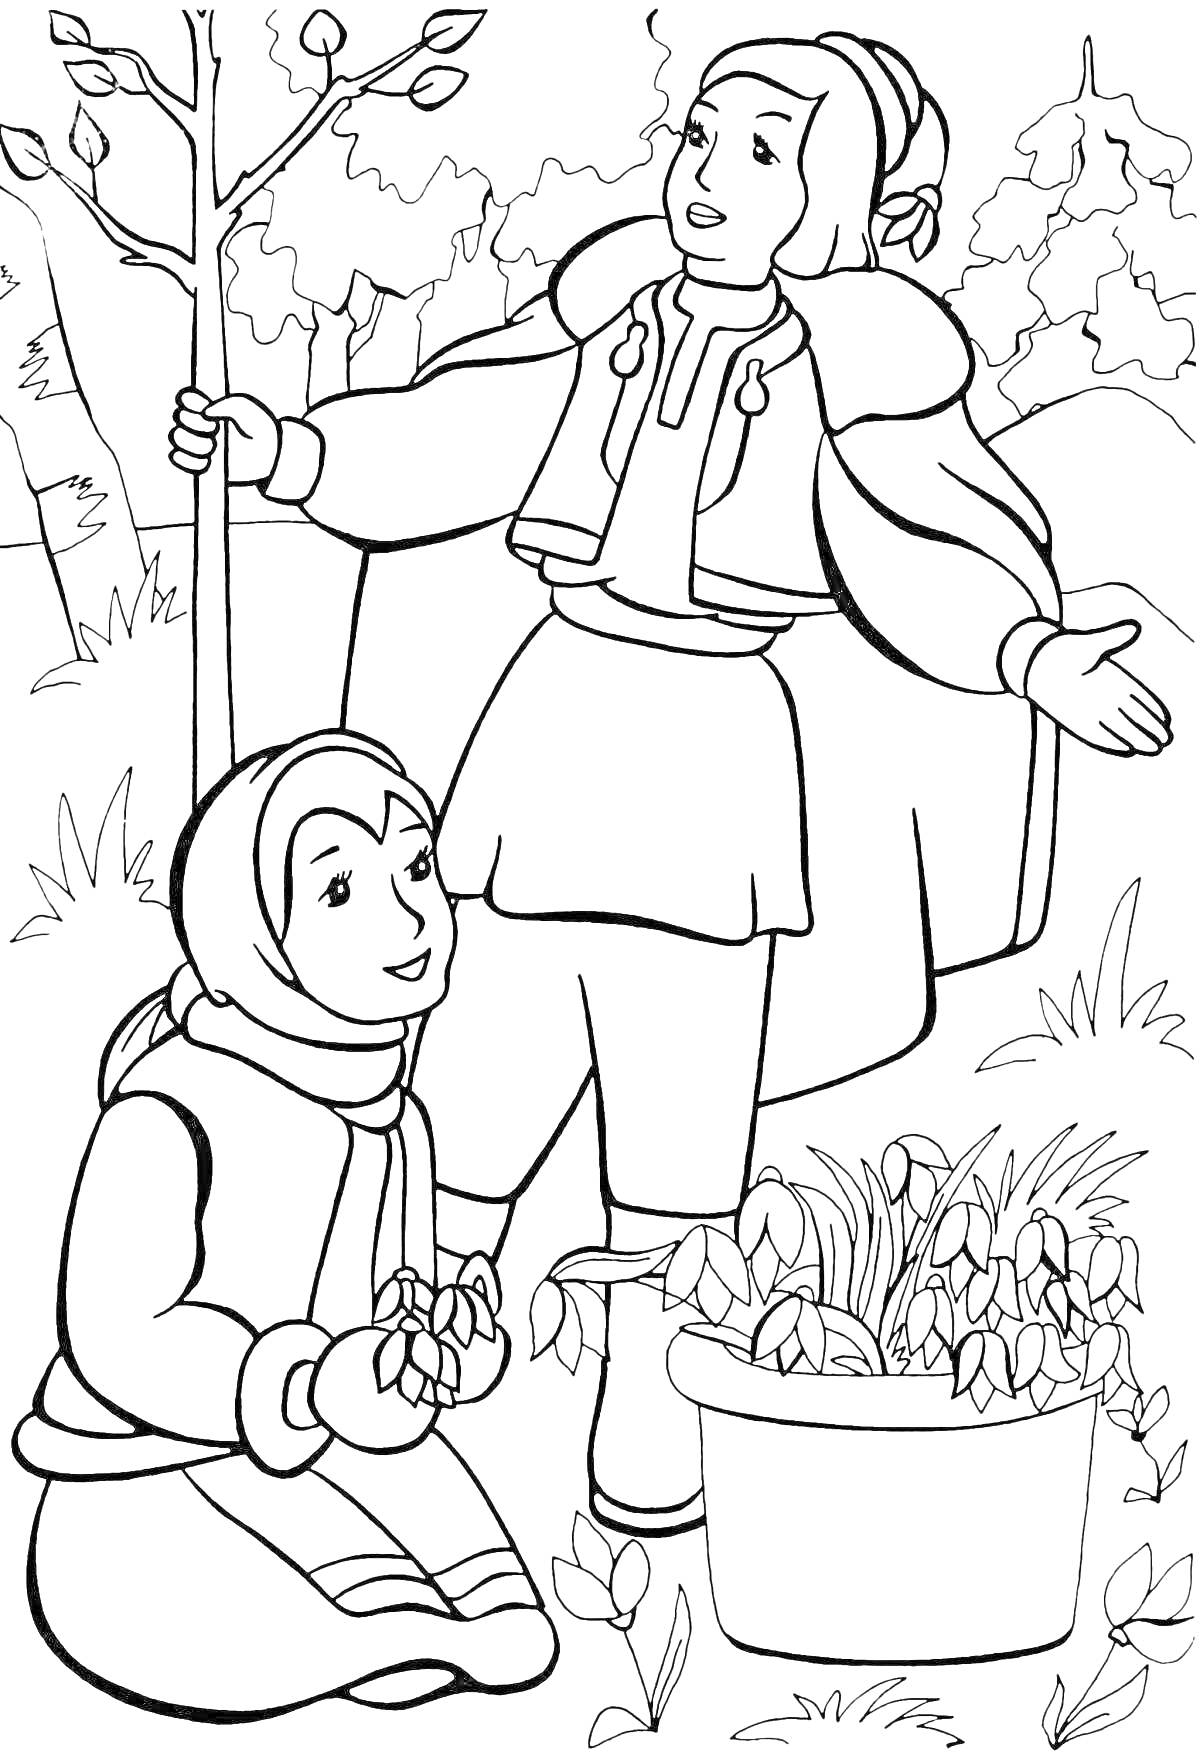 Раскраска Парень и девушка в зимней одежде рядом с деревом и растением в горшке в лесу